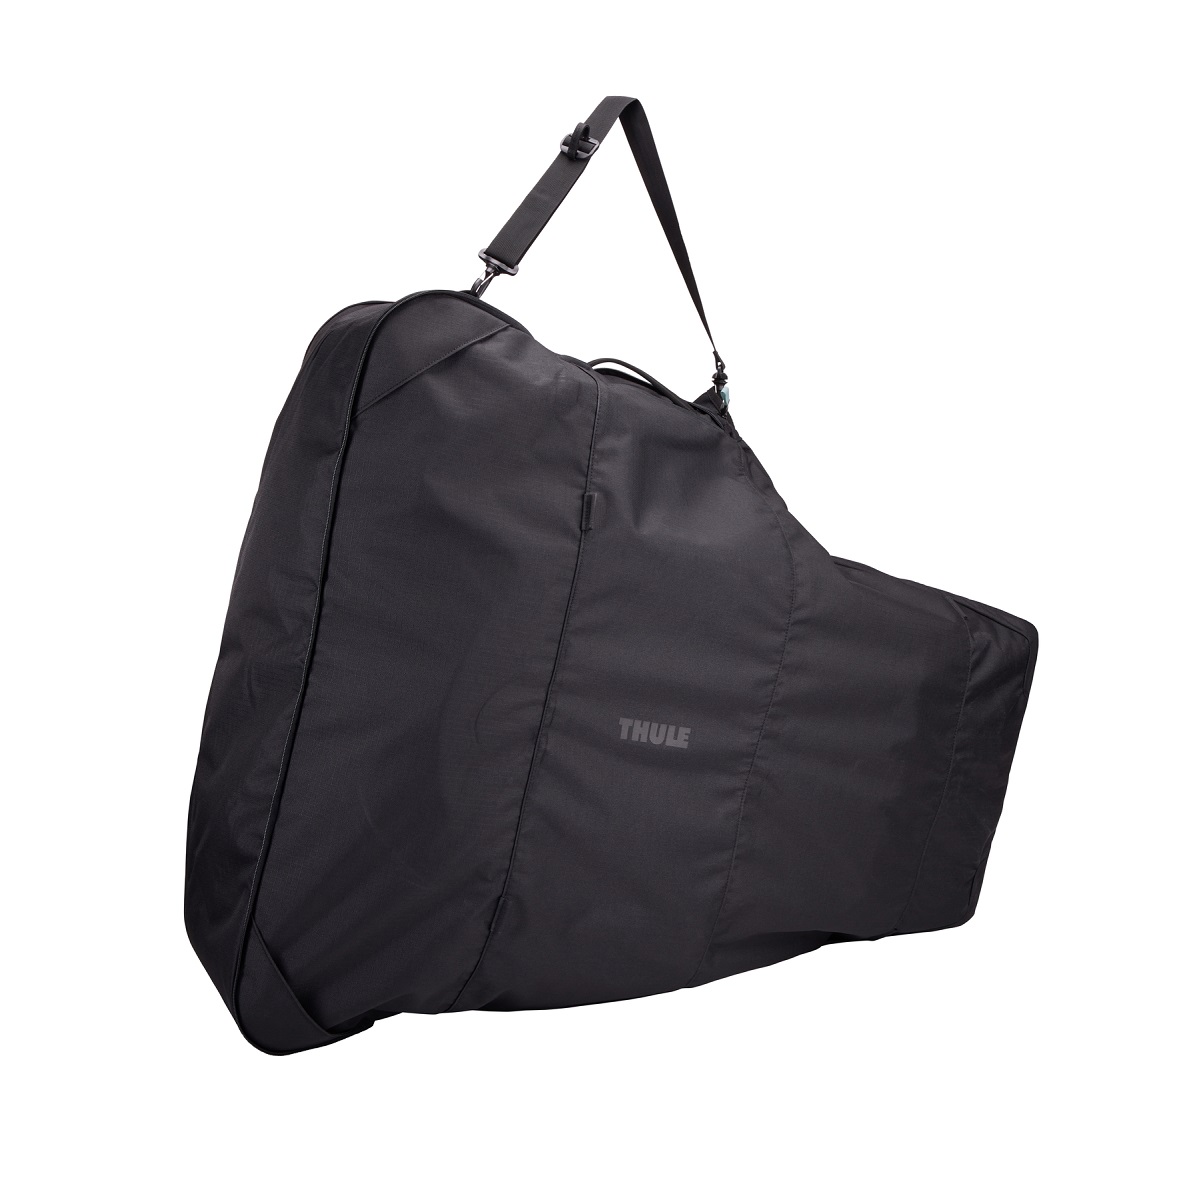 Thule stroller travel bag - putna torba za kolica